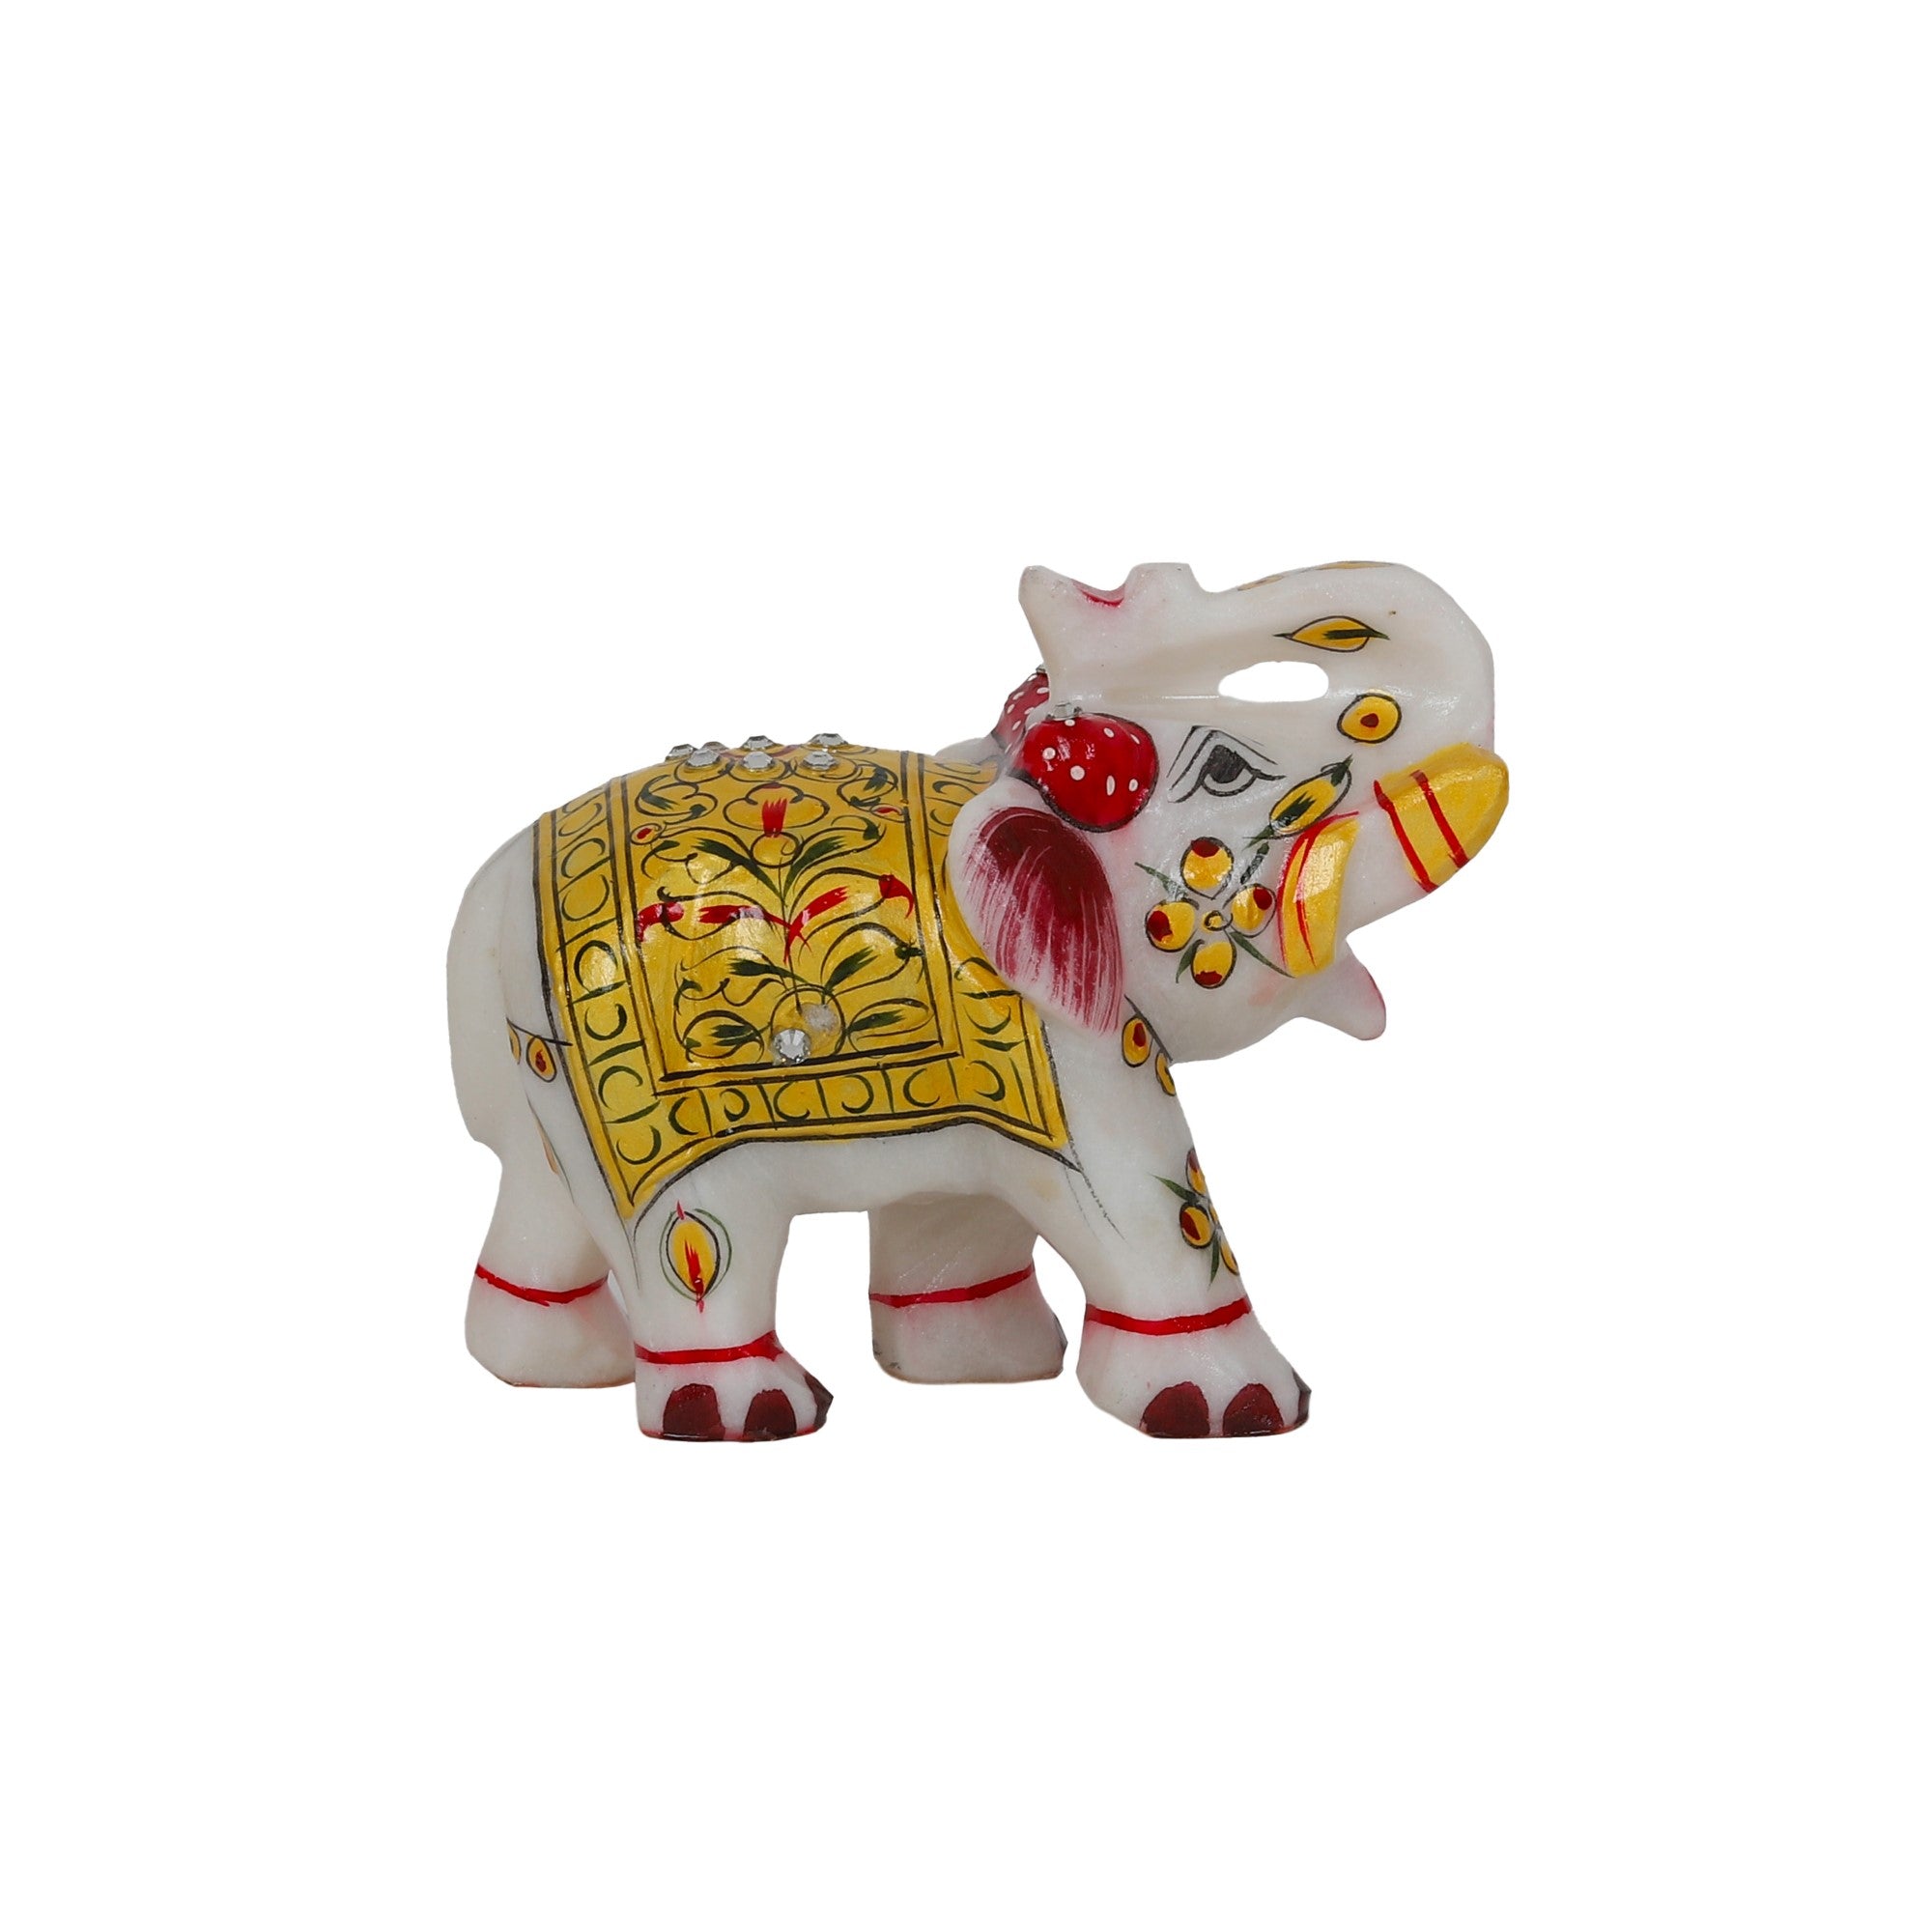 Handmade Large White Rajasthani Marble Stone Royal Elephant Decorative Showpiece